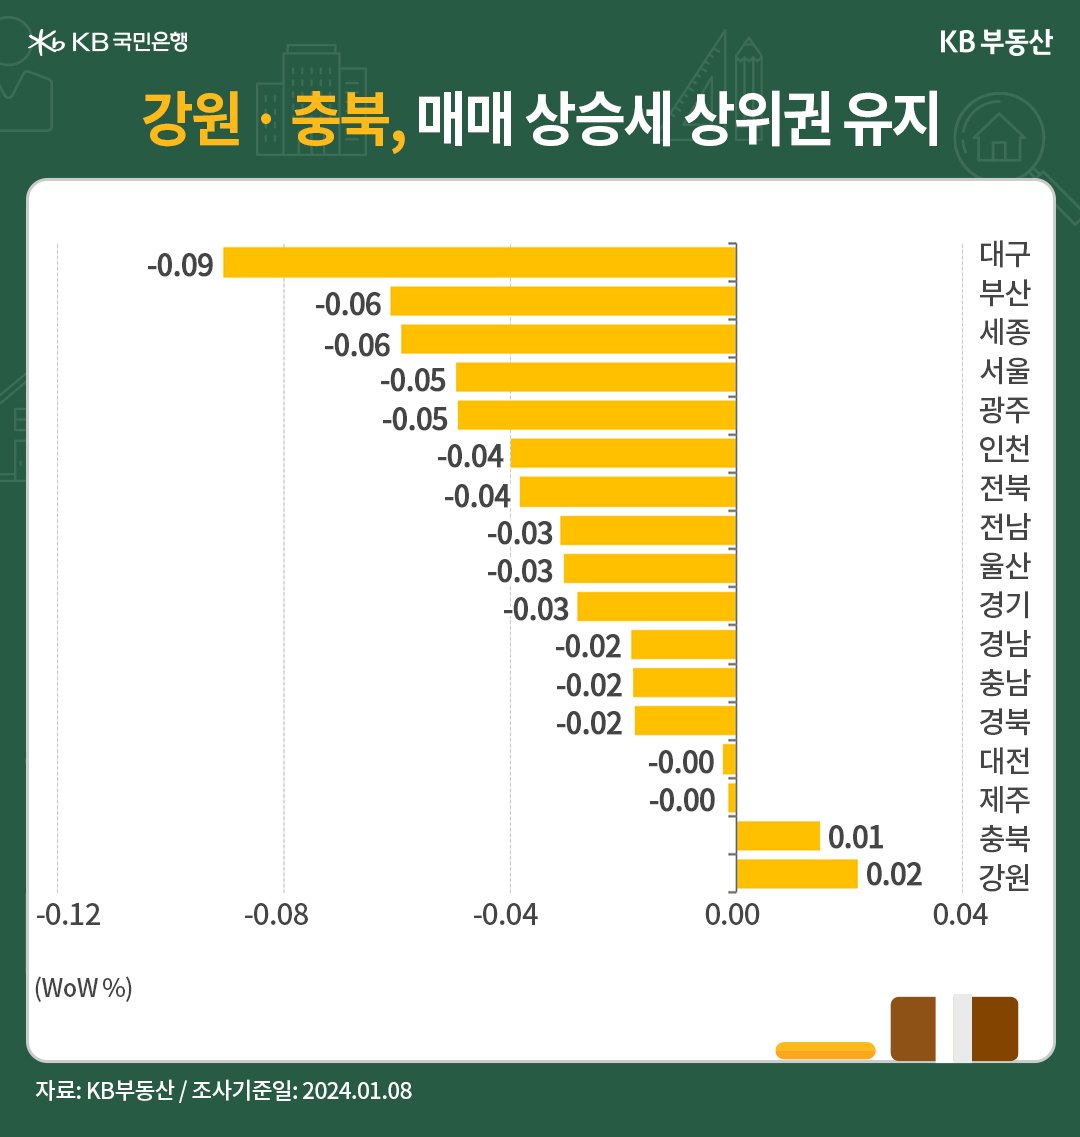  전국 '권역별 매매가격'은 서울ㆍ수도권으로 약세기조가 확대 중입니다.전국 권역별 '전세가격'은 '서울' 중심으로 강세국면이 이어졌습니다. 